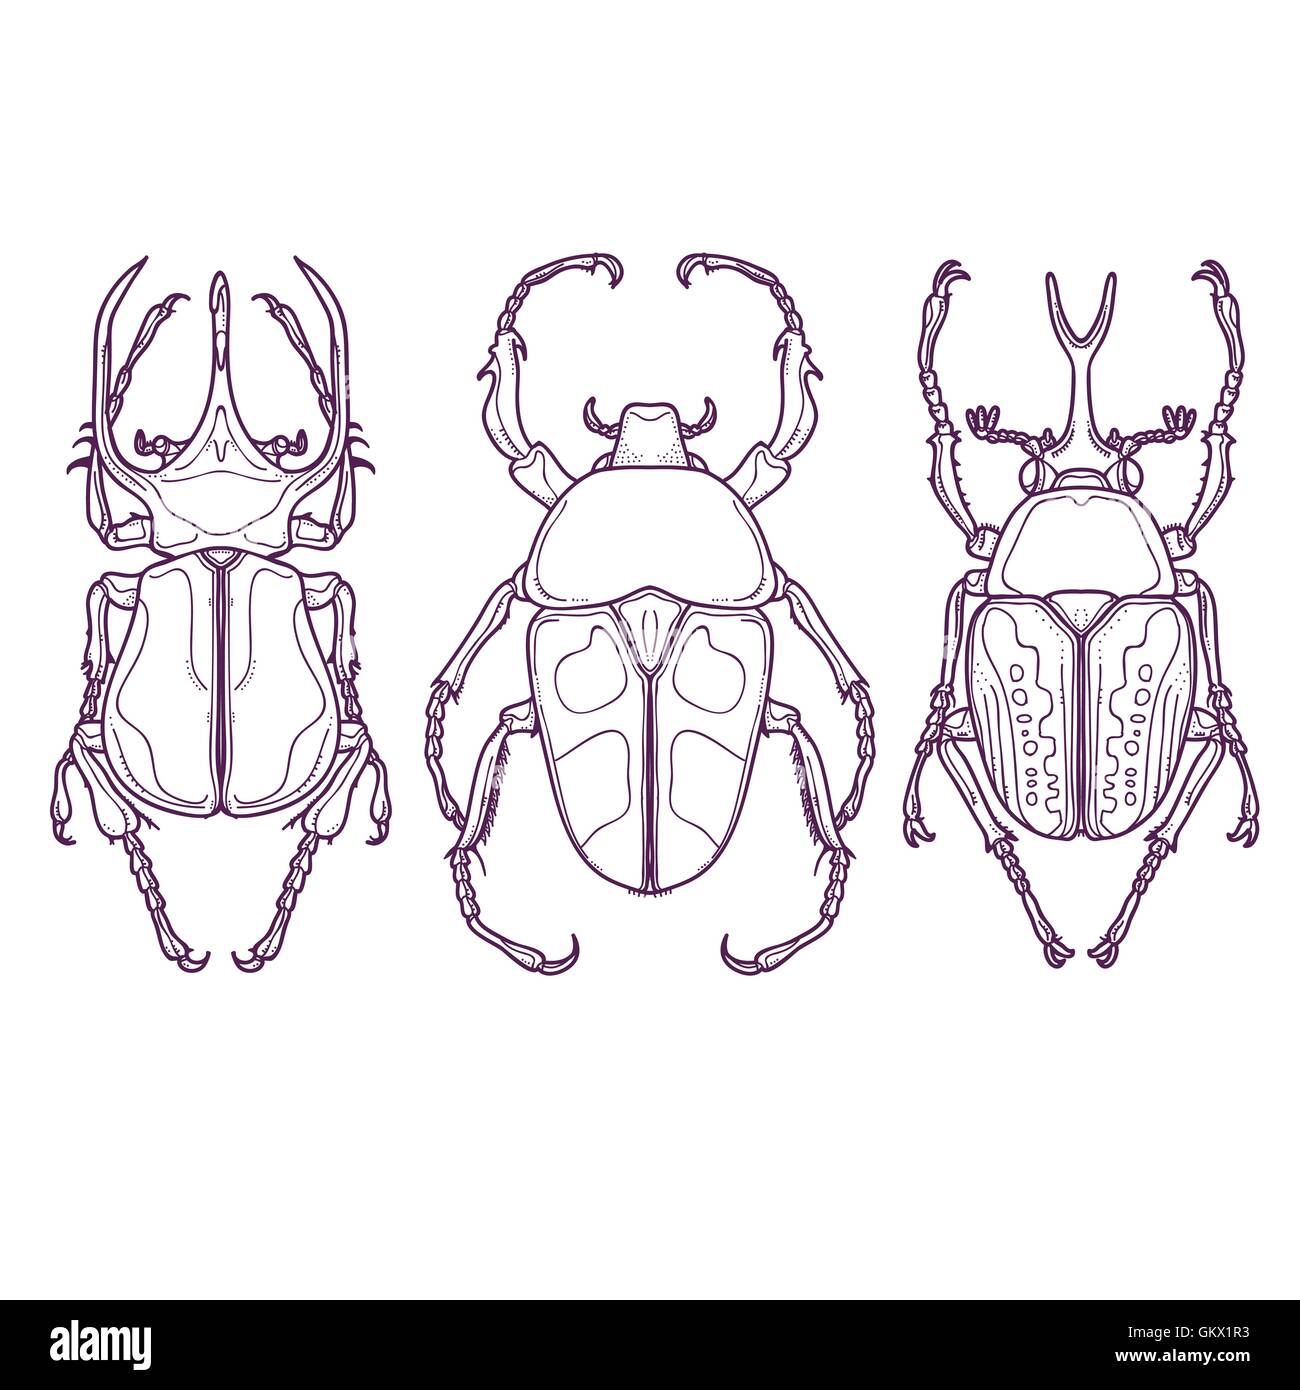 Vektor-Illustration von Insekten wie Gliederung von Hand gezeichnet. Satz von 3 Beetle Bugs Draufsicht Stock Vektor